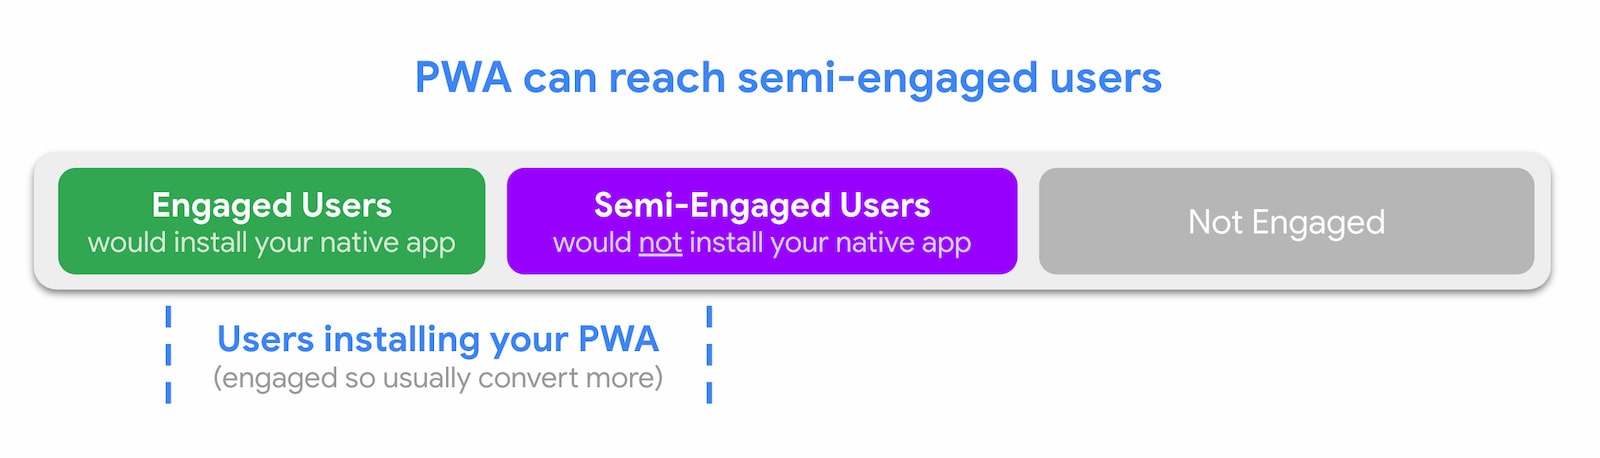 Las PWA pueden llegar a usuarios semi-comprometidos